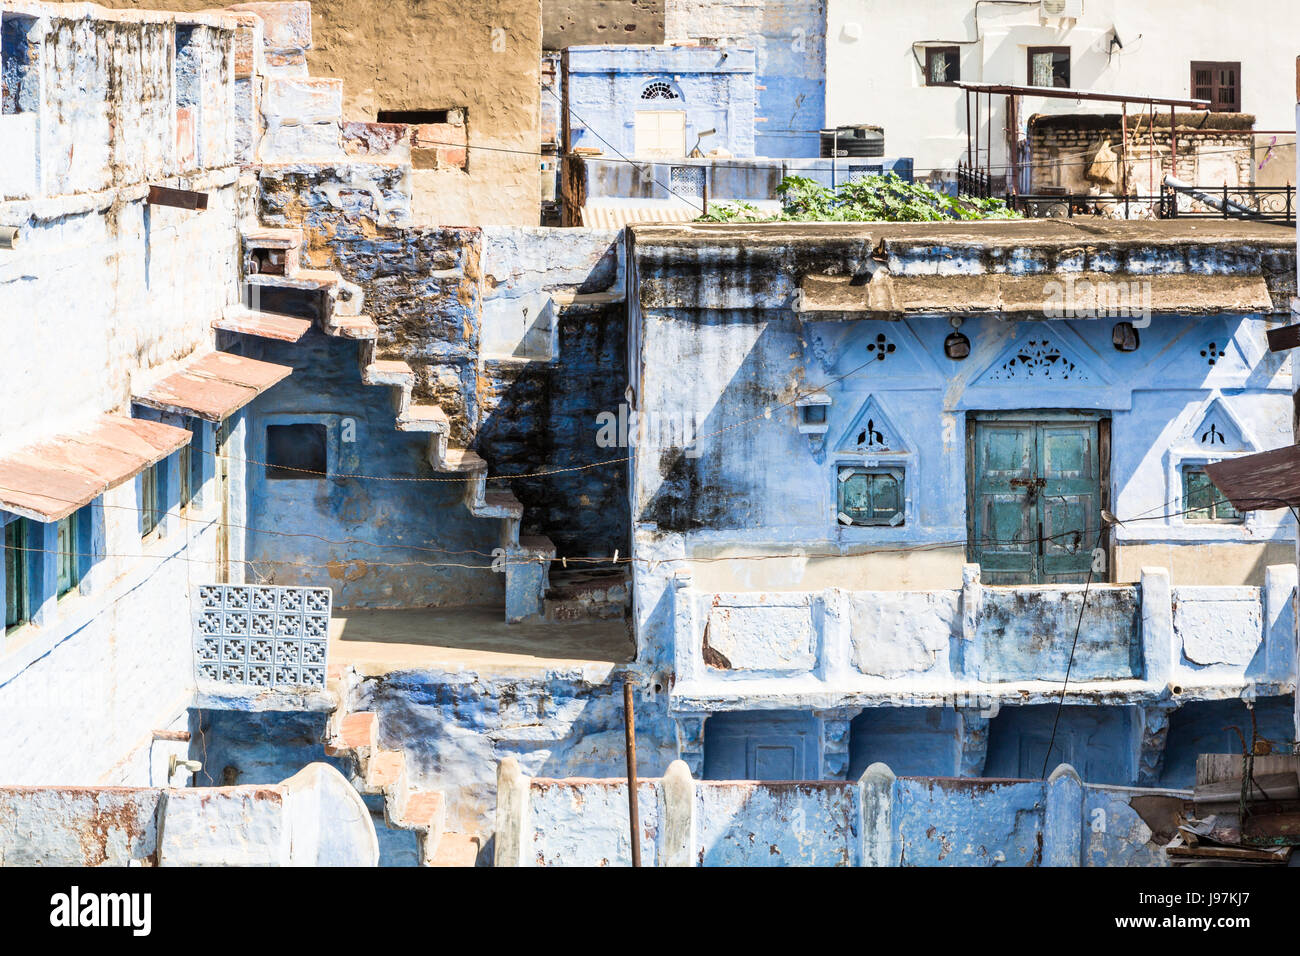 Il famoso Jodphur città blu nel Rajasthan, India. La città è famosa per aver maggior parte parete della città vecchia dipinte di blu Foto Stock